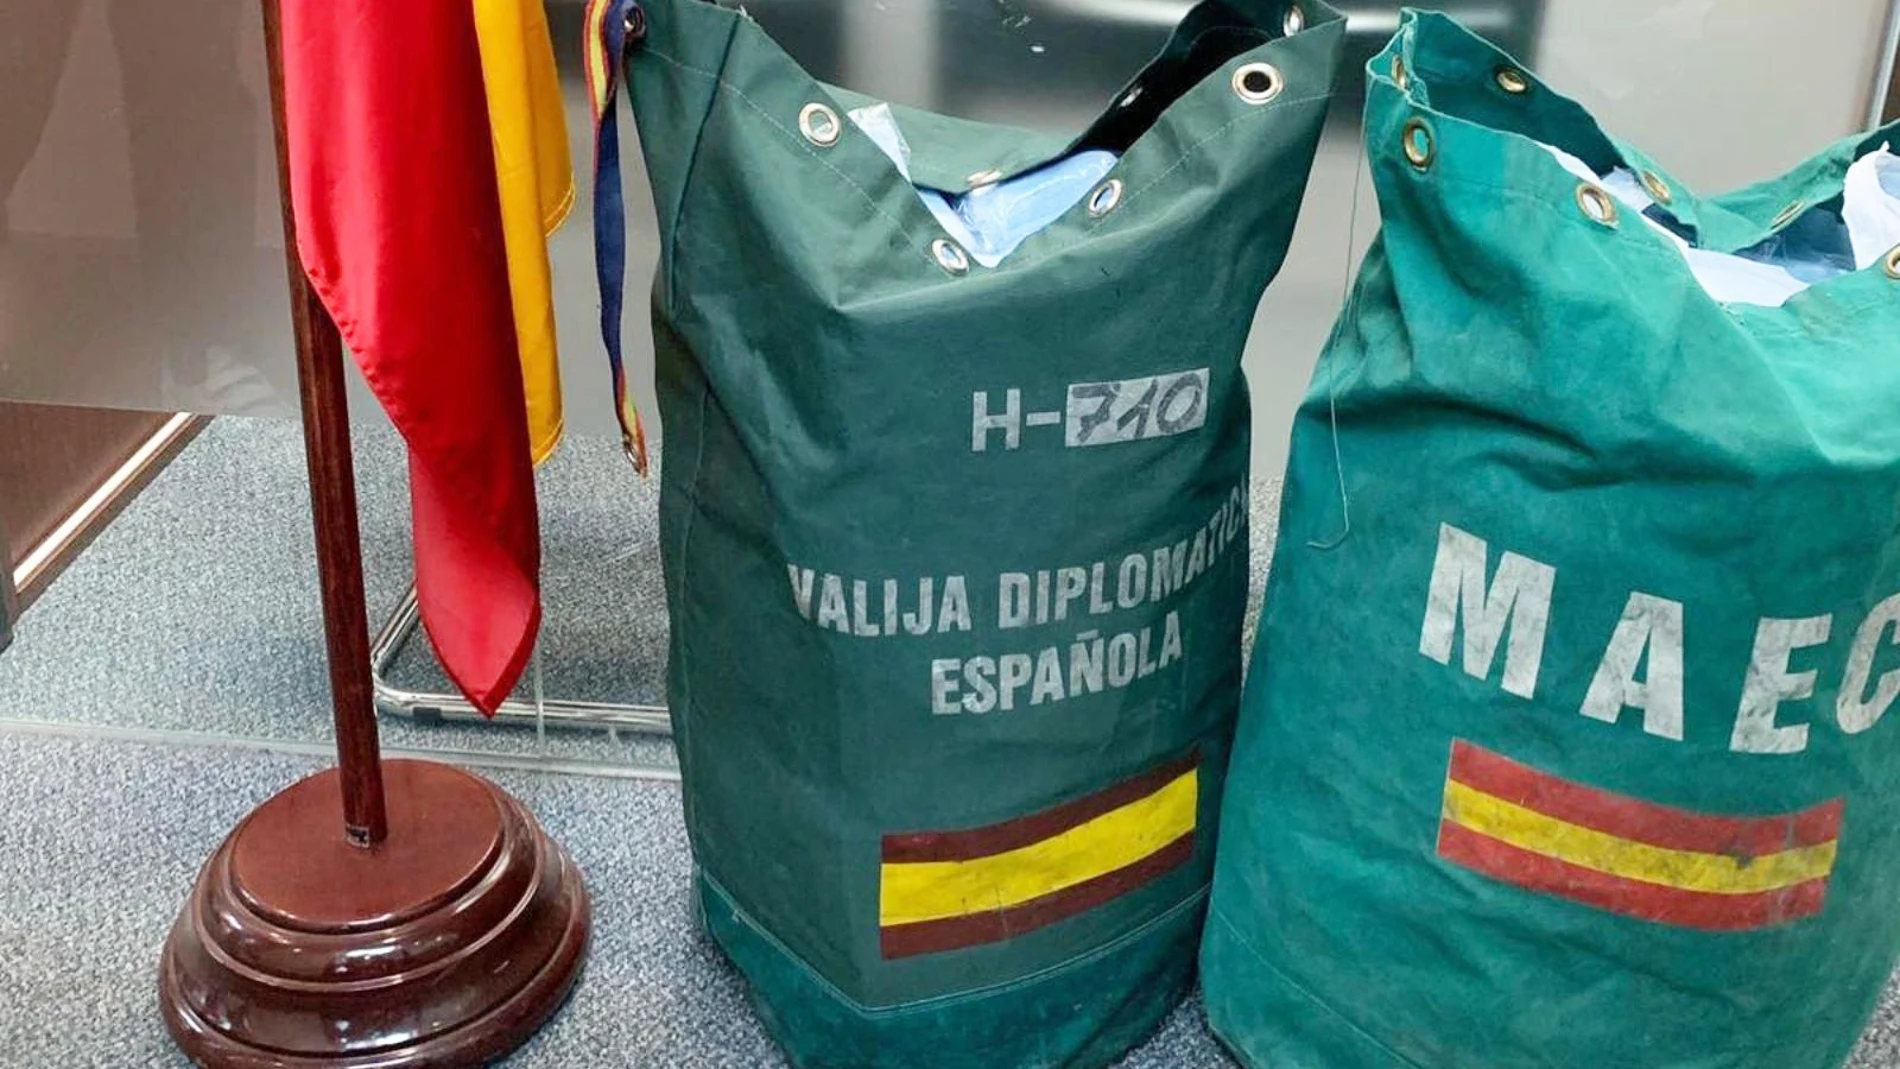 Una valija diplomática española, en la Embajada española en Pekín